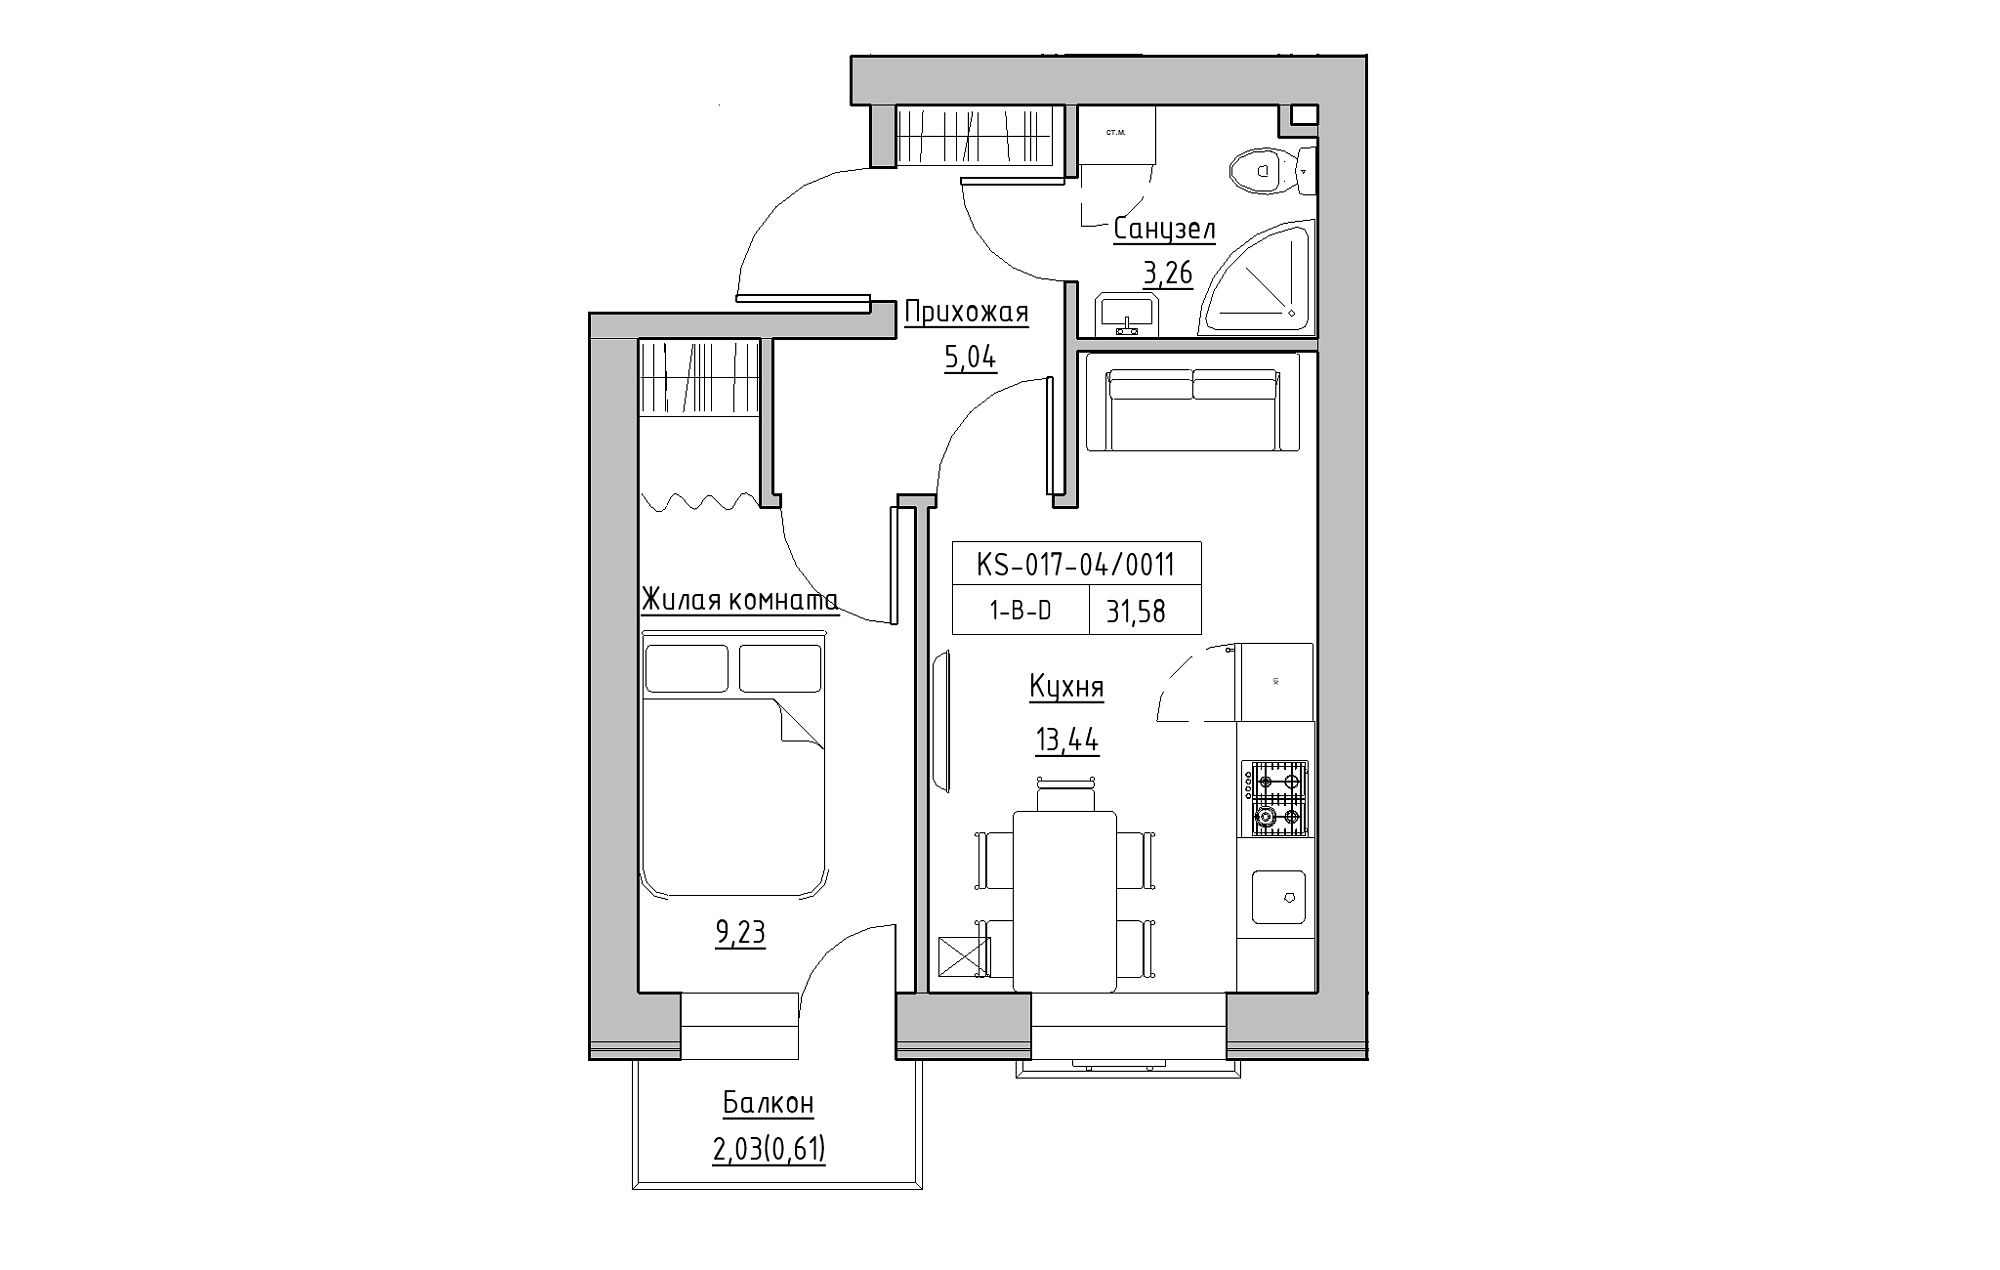 Планировка 1-к квартира площей 31.58м2, KS-017-04/0011.